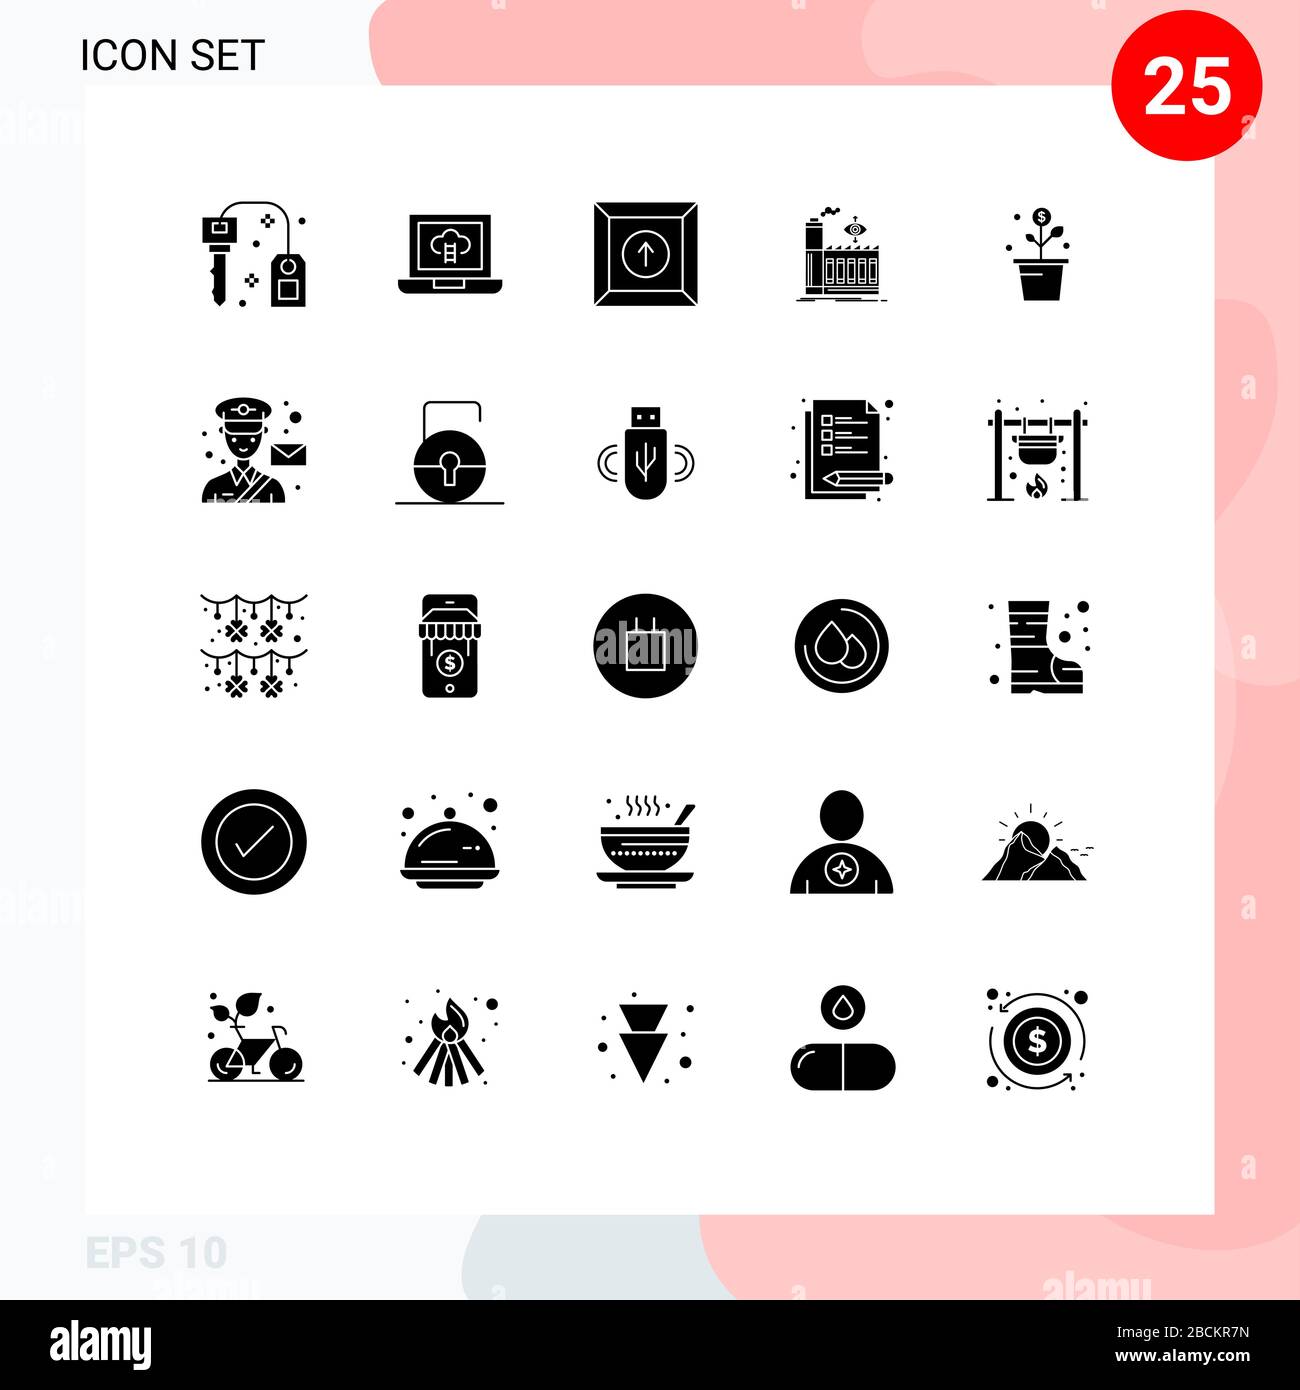 Ensemble de 25 icônes d'interface utilisateur modernes symboles signes pour pot, argent, produit, croissance, business Editable Vector Design Elements Illustration de Vecteur